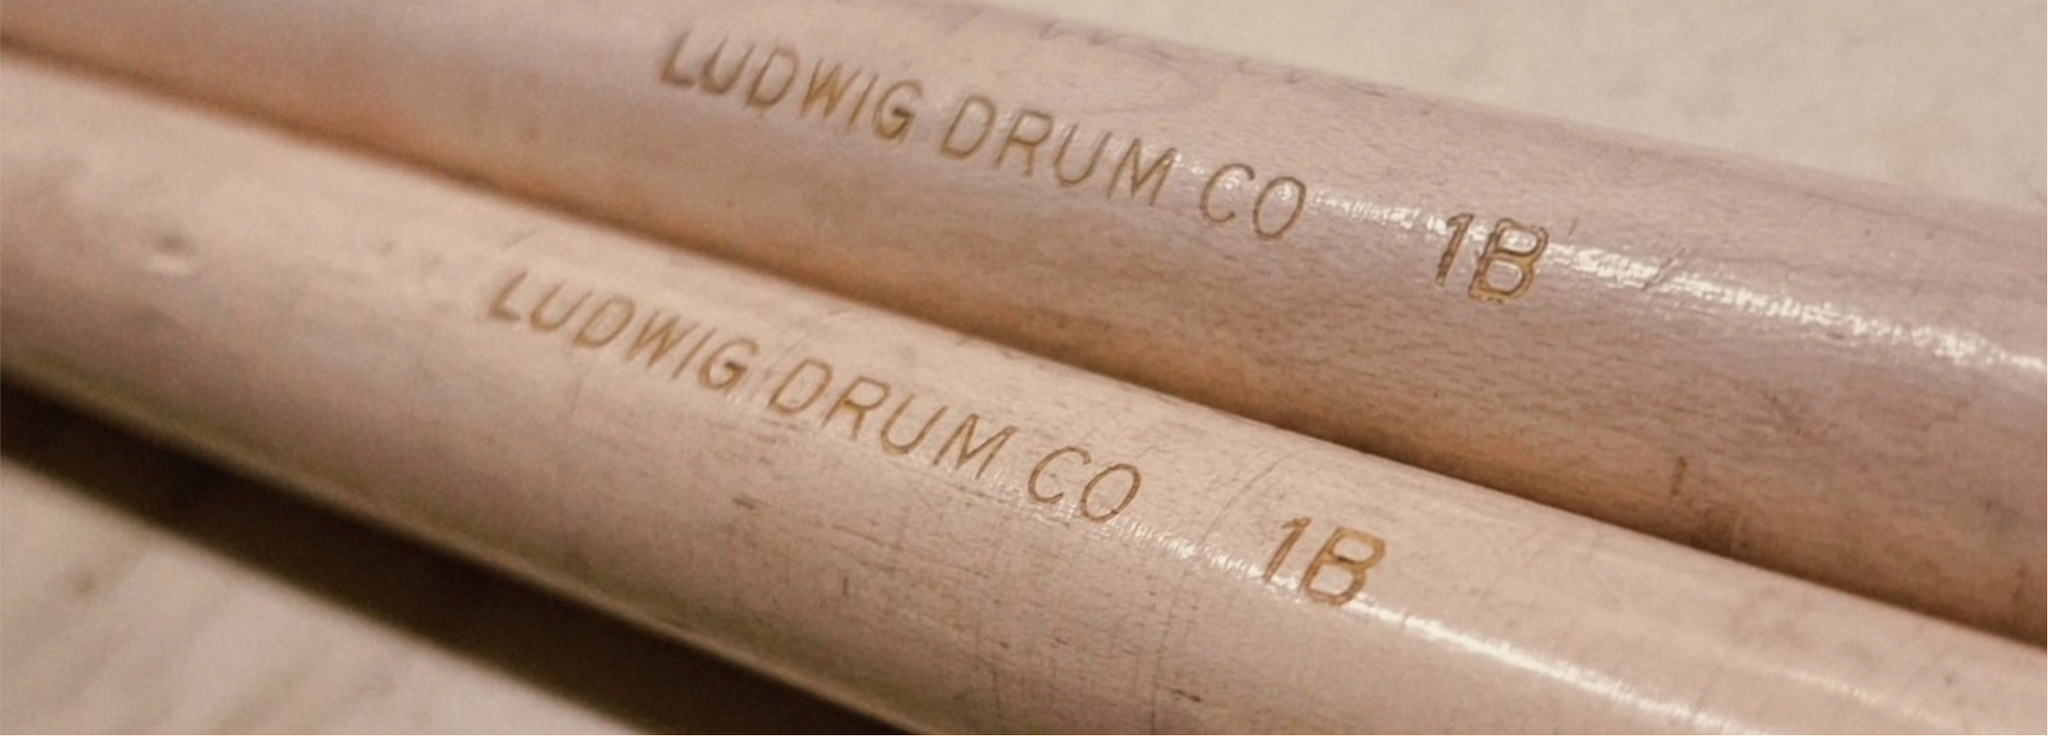 Drum sticks at Badges Drum Shop Cincinnati Ohio